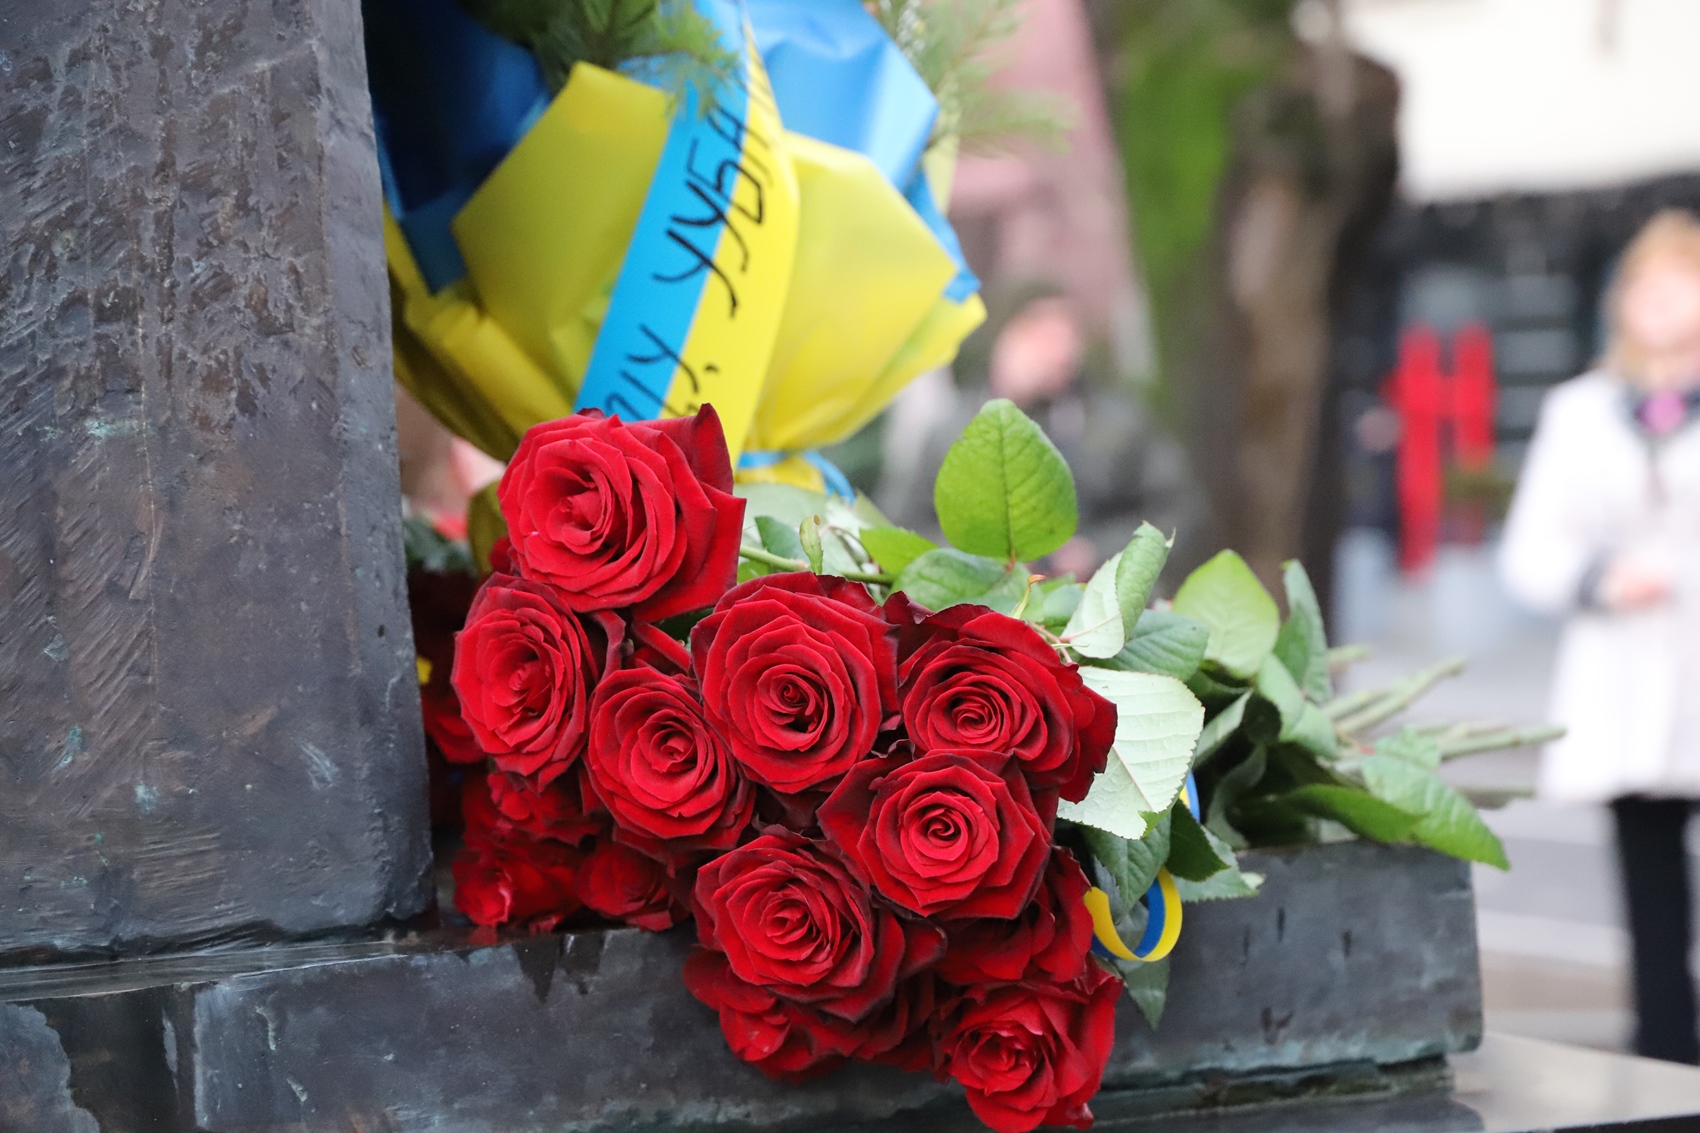 З нагоди Дня Соборності та річниці проголошення незалежності УНР в Ужгороді поклали квіти до пам'ятників Шевченку та Волошину (ФОТО)